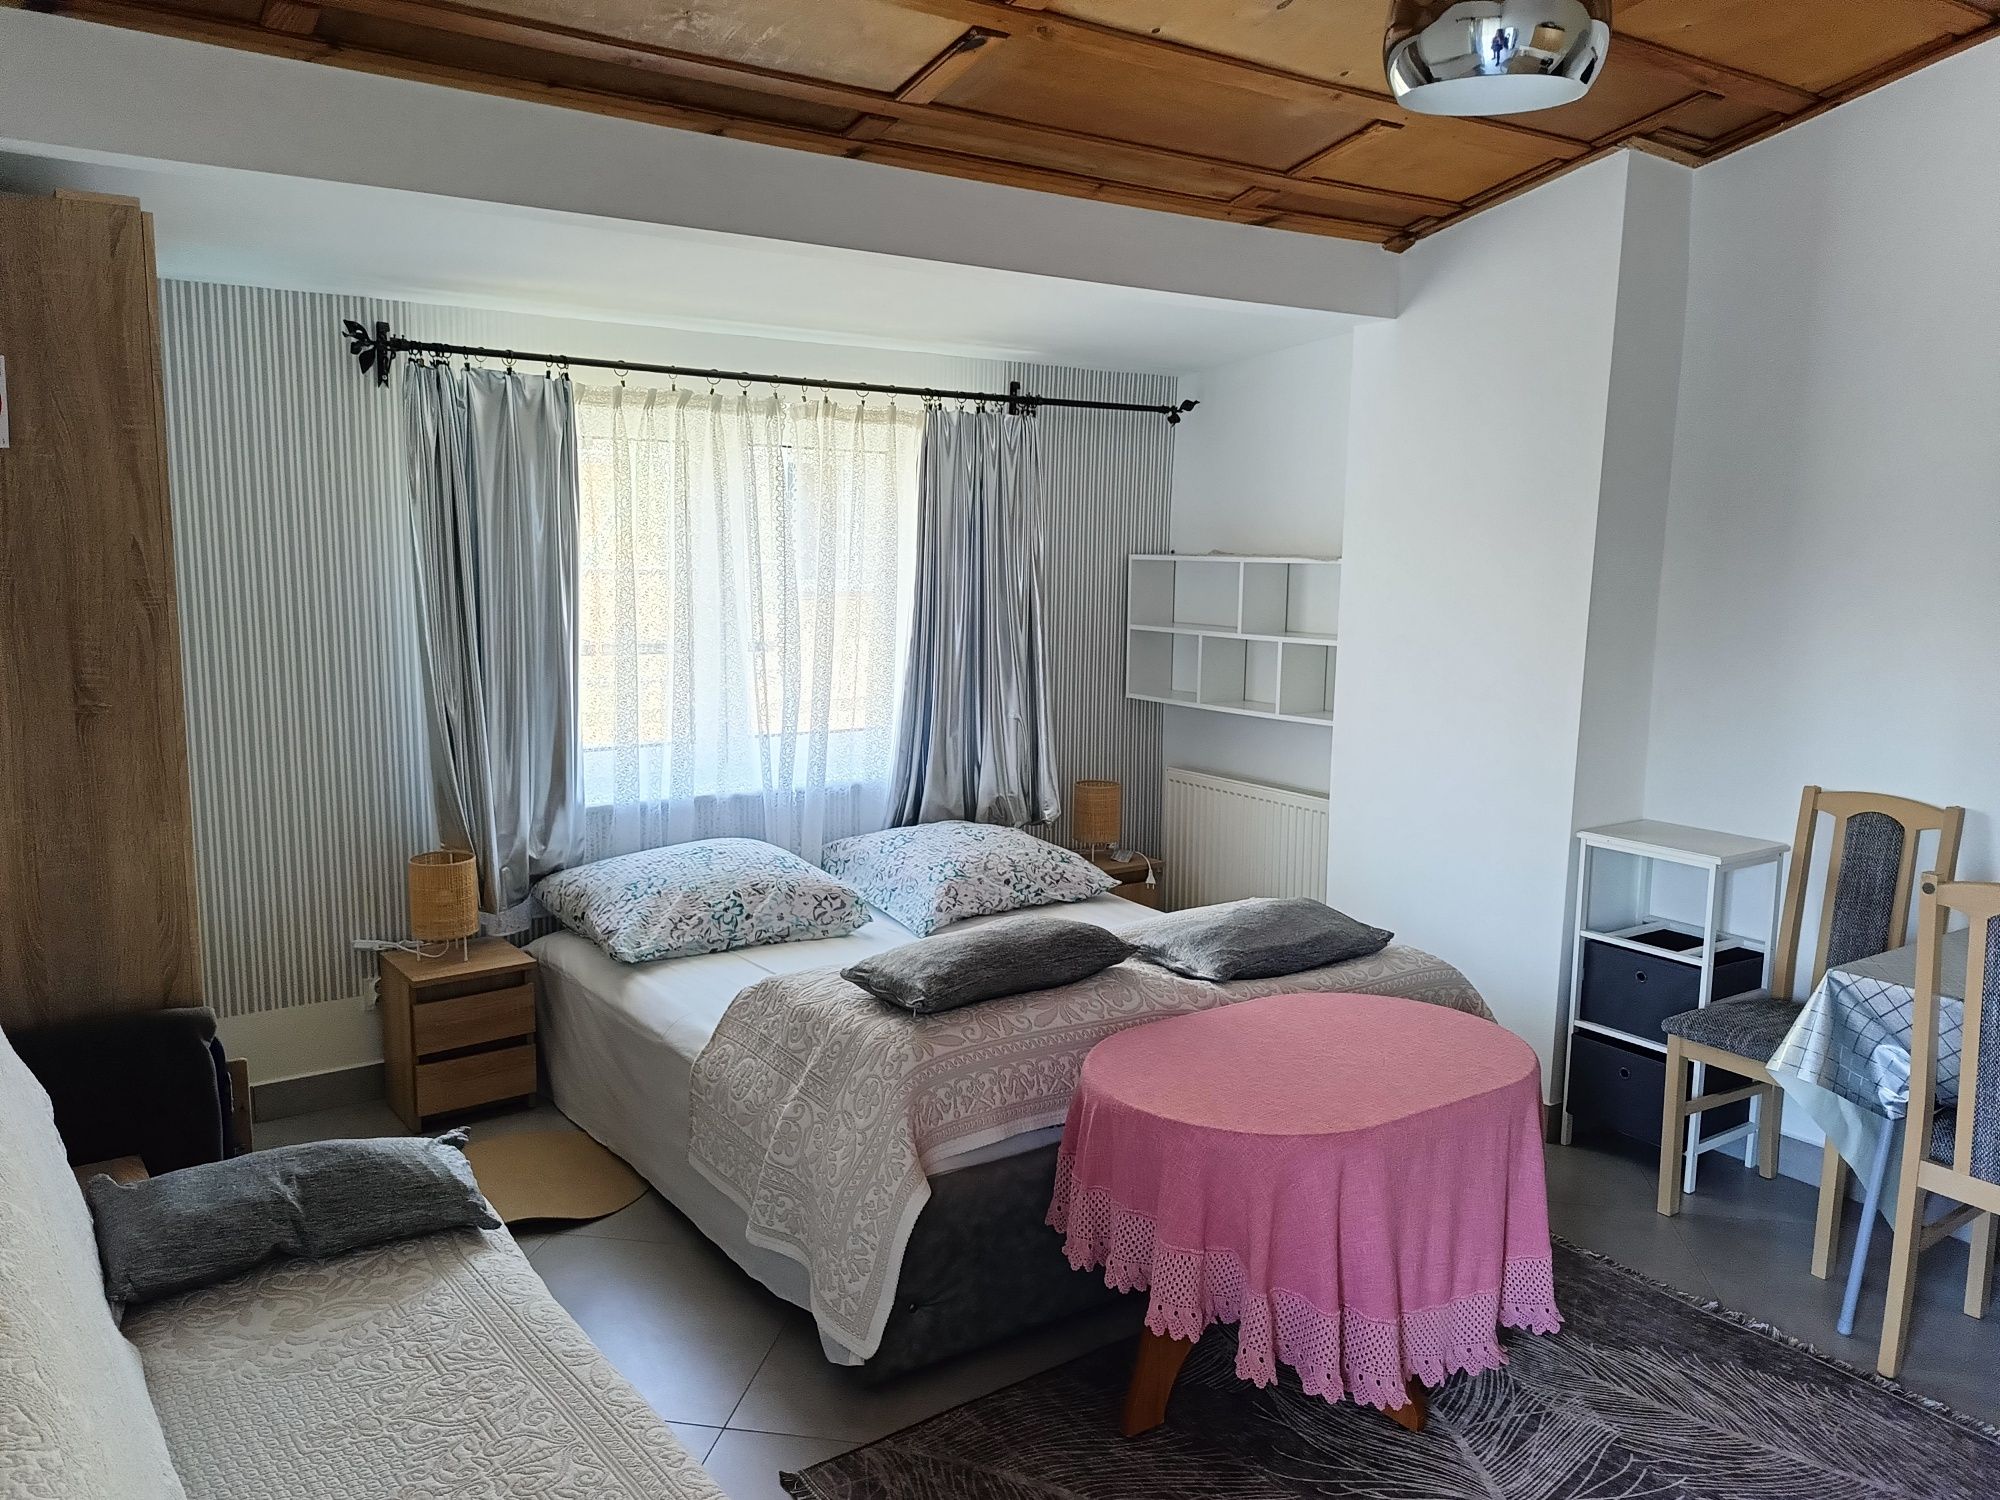 Pokoje z mini aneksami lub mieszkanie do wynajęcia w Dźwirzynie